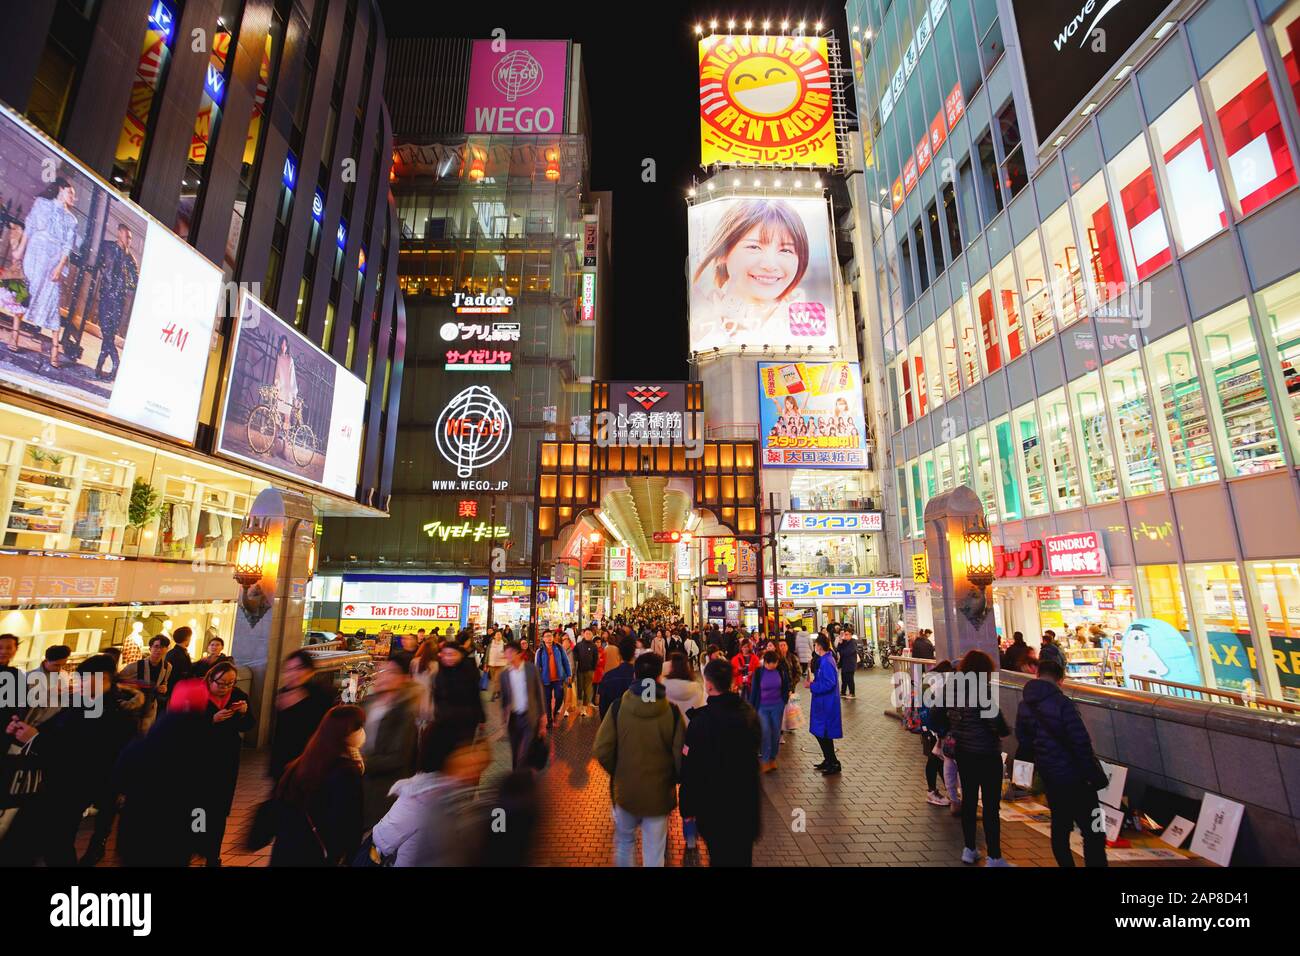 Osaka, Giappone - 16 Dicembre 2019 : Namba-Shinsaibashi-Dotonbori, la famosa via dello shopping e dei ristoranti nella citta' di Osaka, Giappone. Foto Stock